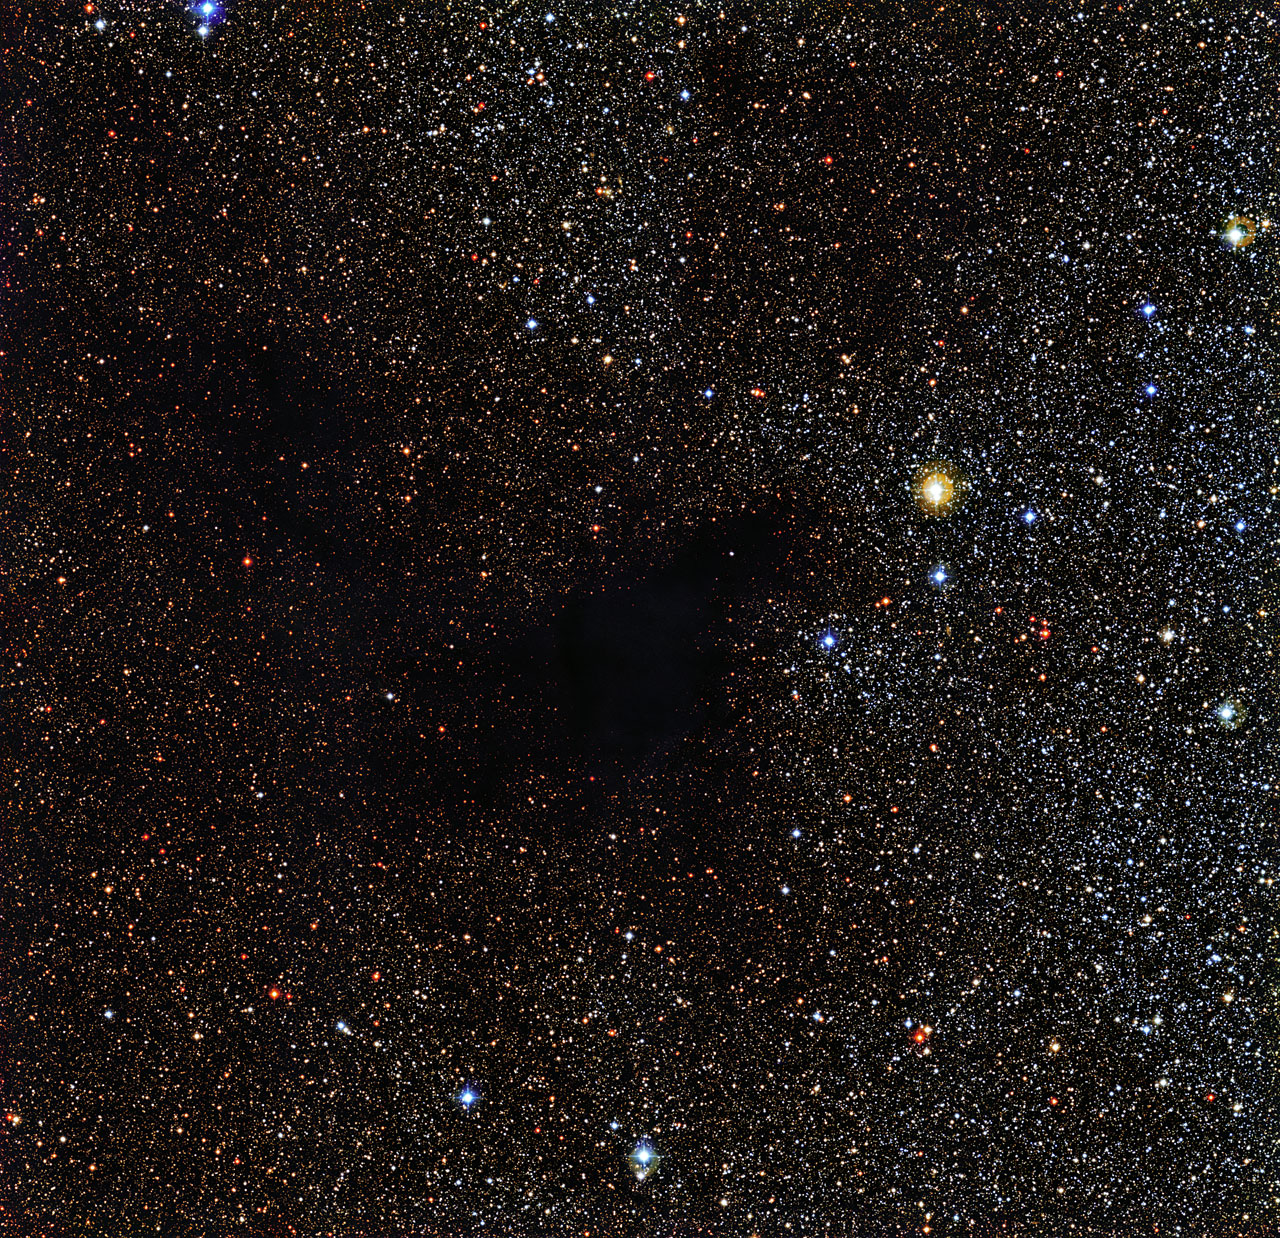 The dark nebula LDN 483